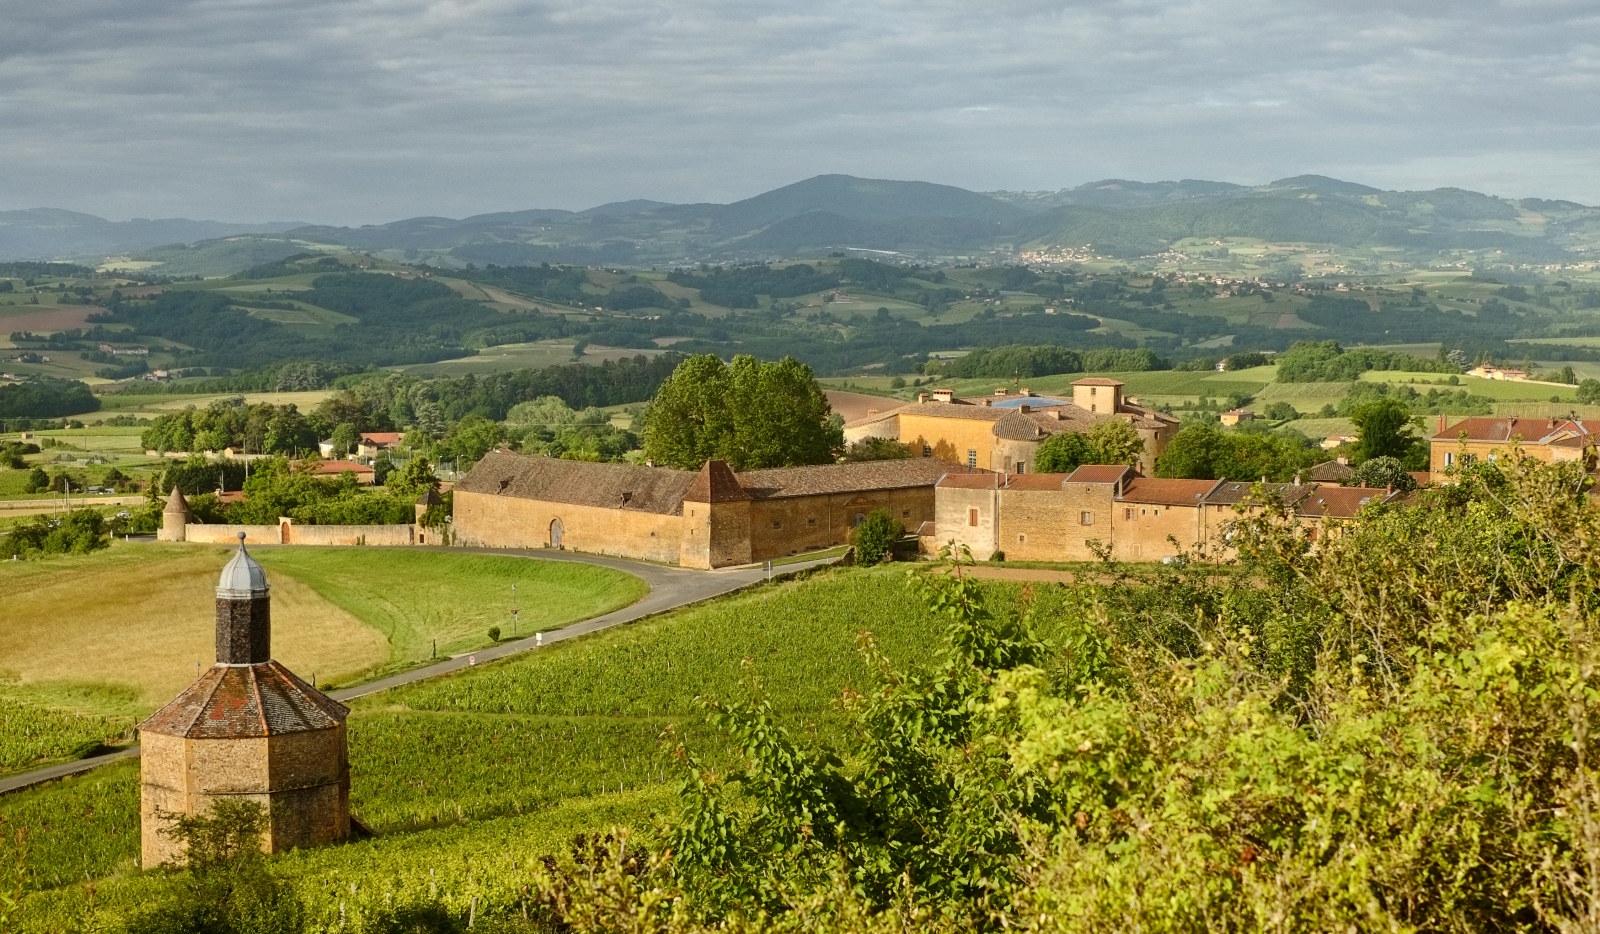 A scenic landscape of hills, vineyards, the Pigeonnier and Château de Bagnols. Part of the Beaujolais wine region, Arrondissement: Villefranche-sur-Saône, France. Travel photography by Kent Johnson.